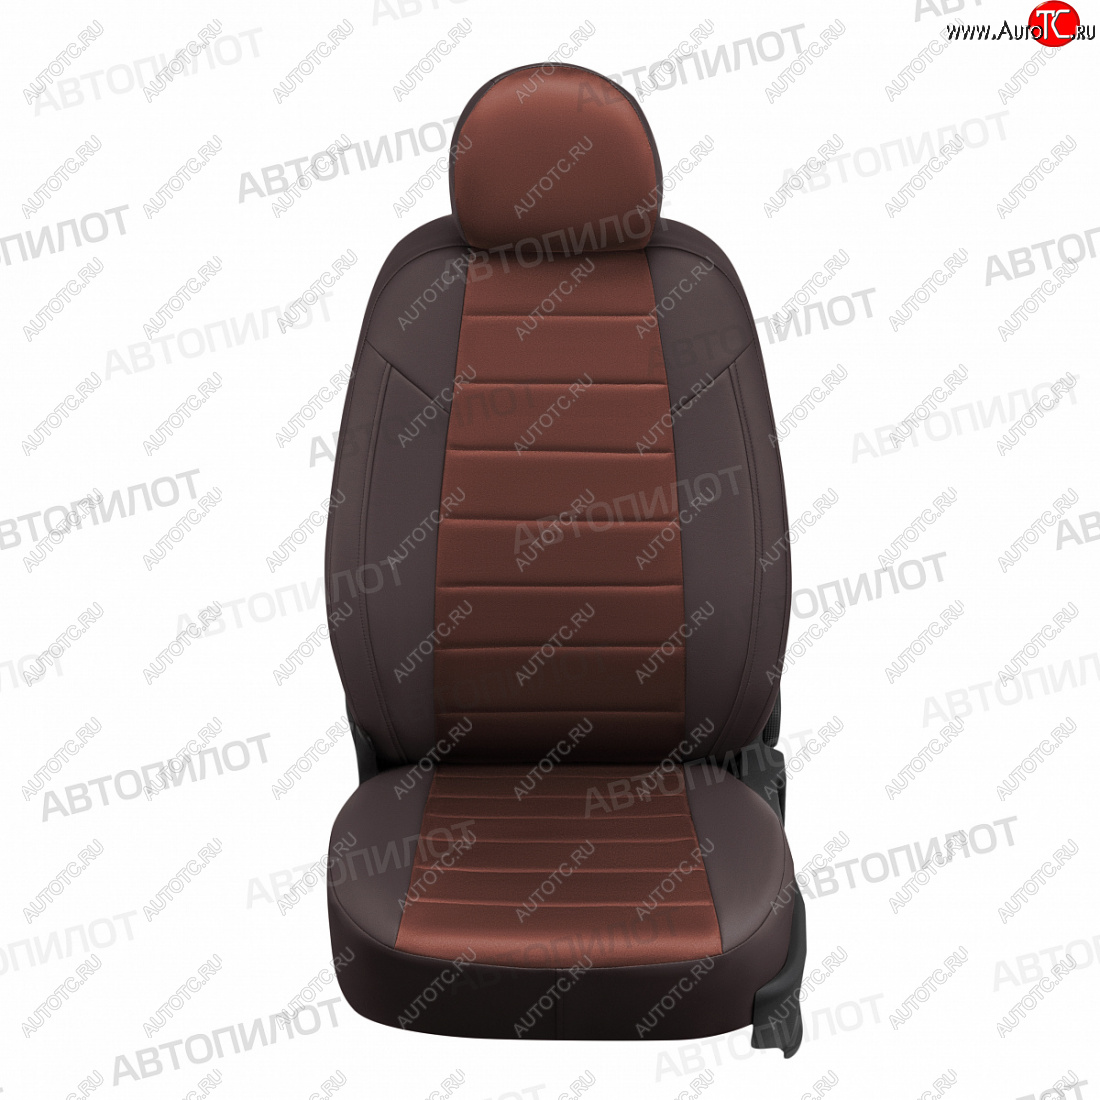 13 449 р. Чехлы сидений (экокожа/алькантара, 60/40) Автопилот  Hyundai Accent  седан ТагАЗ (2001-2012) (шоколад)